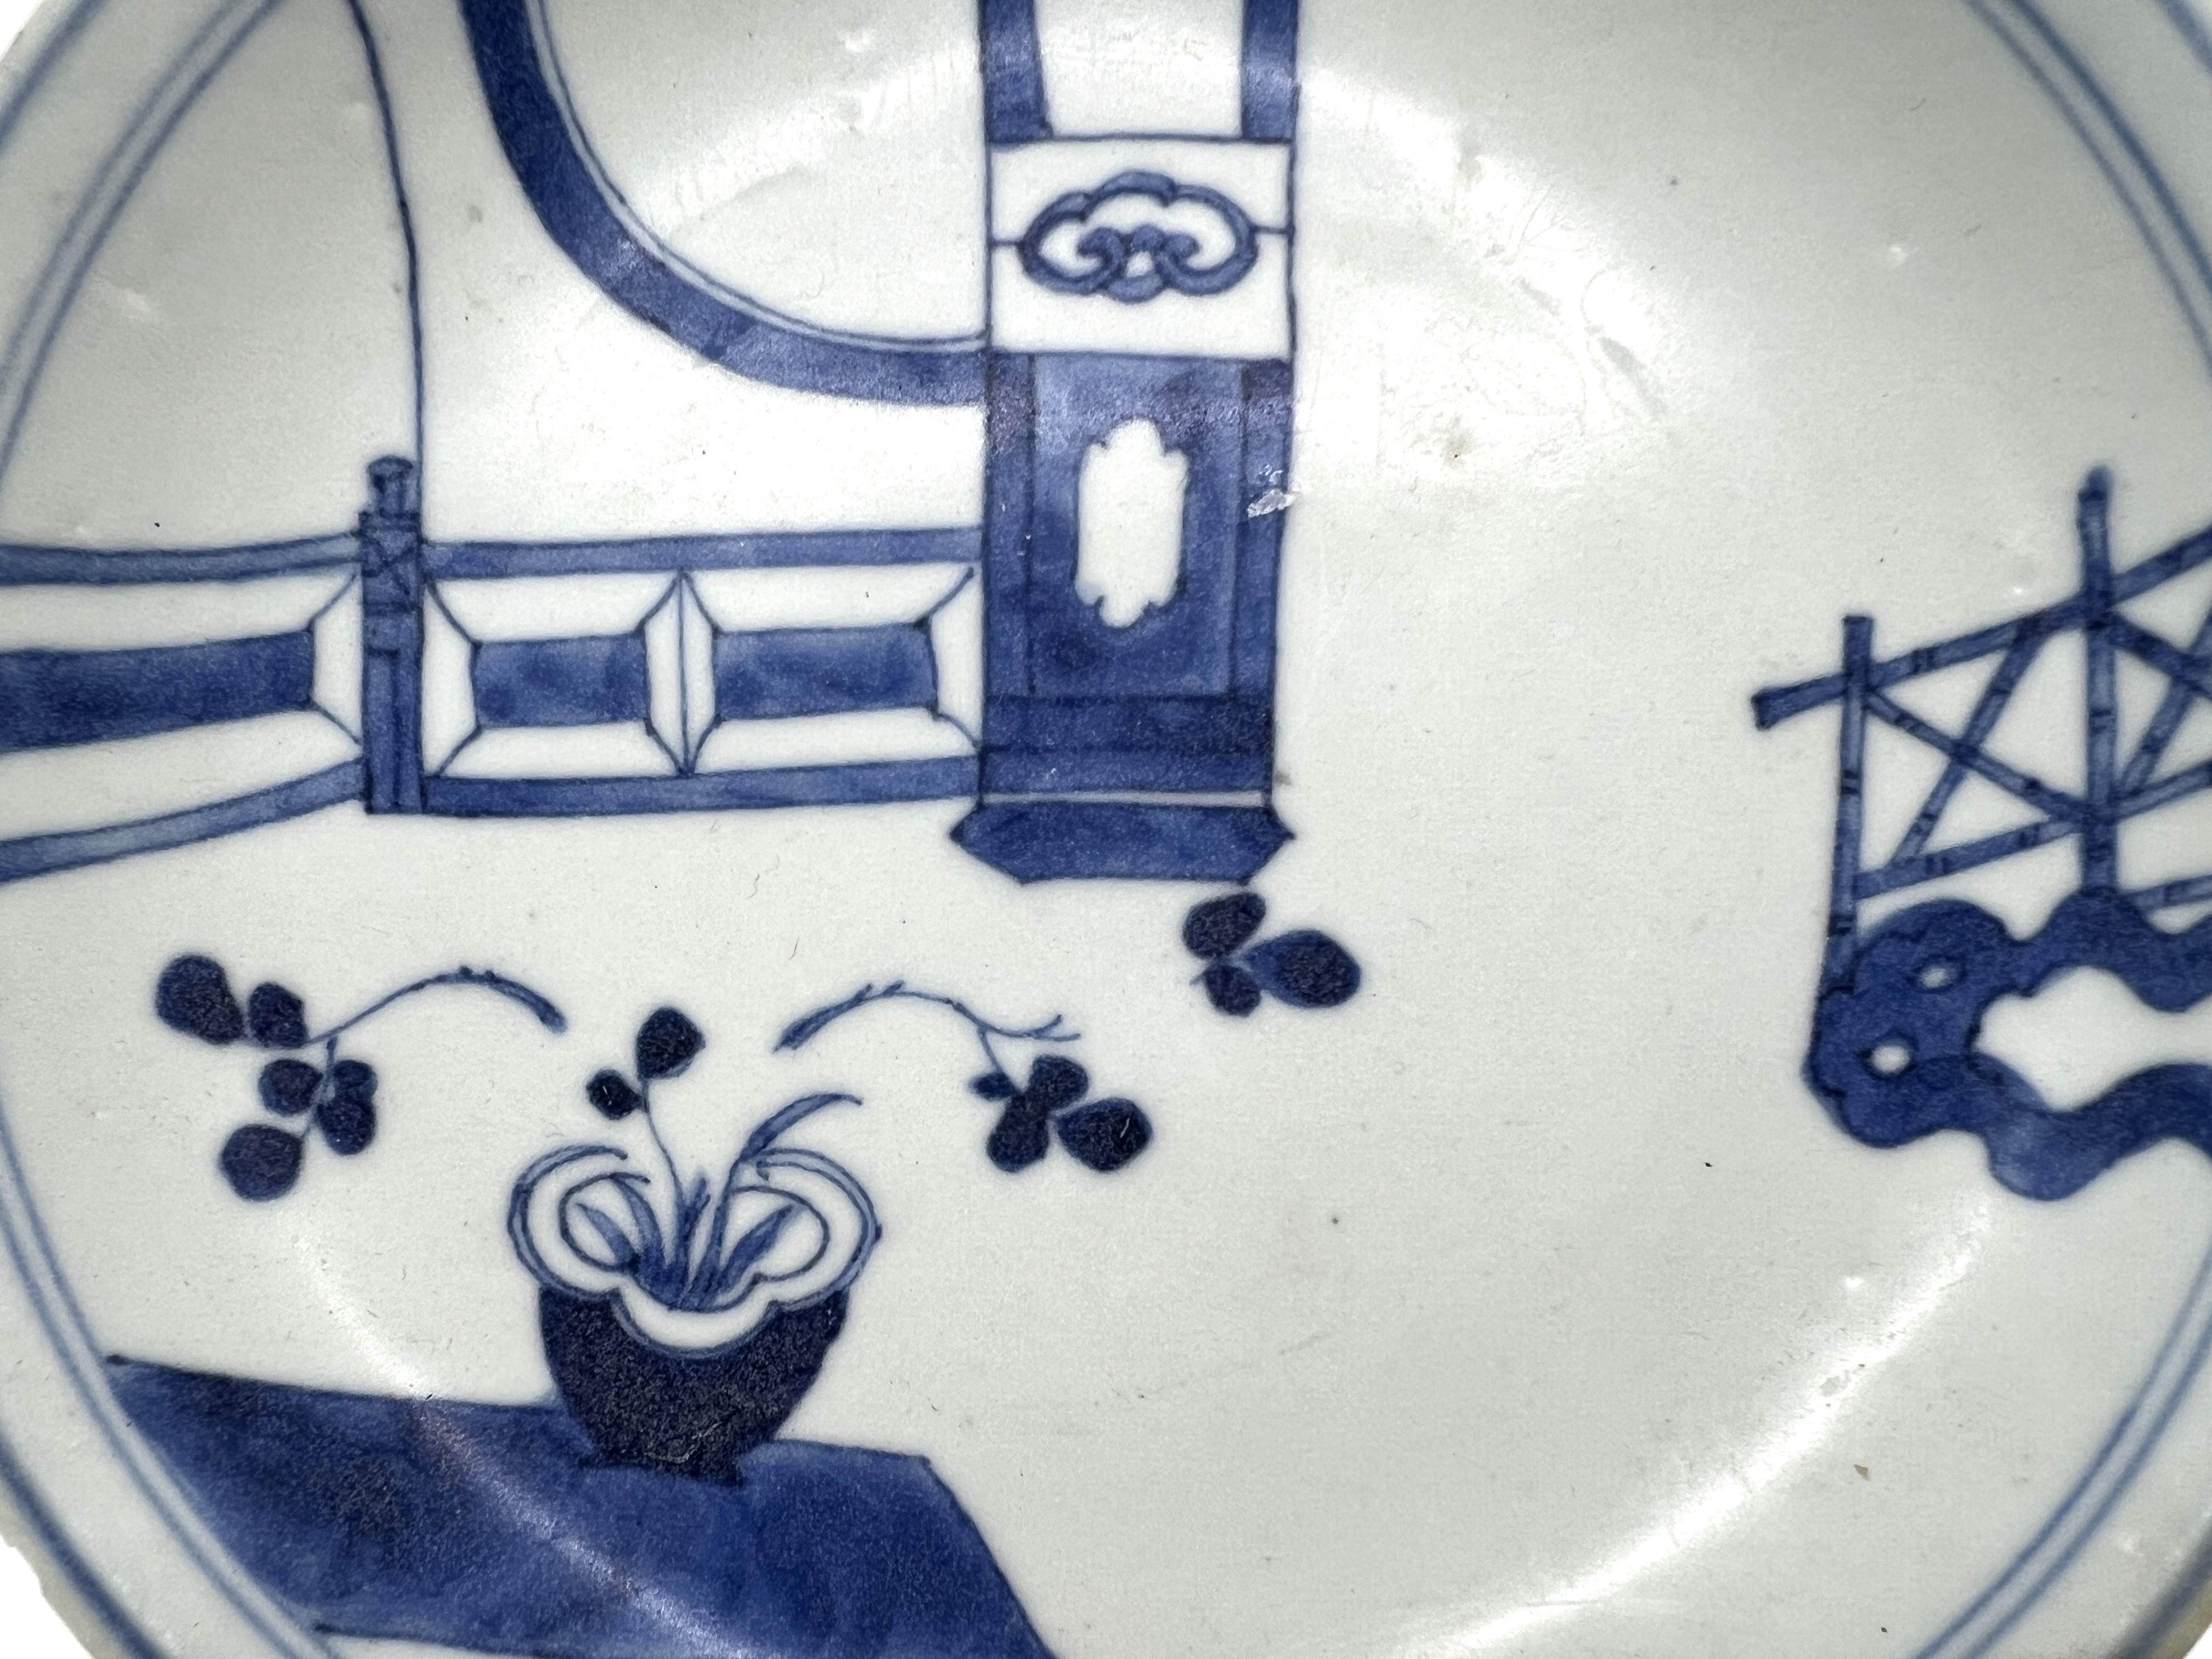 Ursprünglich in Unterglasurblau gemalt, gleitend mit einer Pavillonterrasse, einem Bambuszaun und einem niedrigen Tisch, der mit Blumen geschmückt und mit Vorhängen drapiert ist. 

Zeitraum : Qing-Dynastie, Yongzheng-Periode
Herstellungsdatum : C